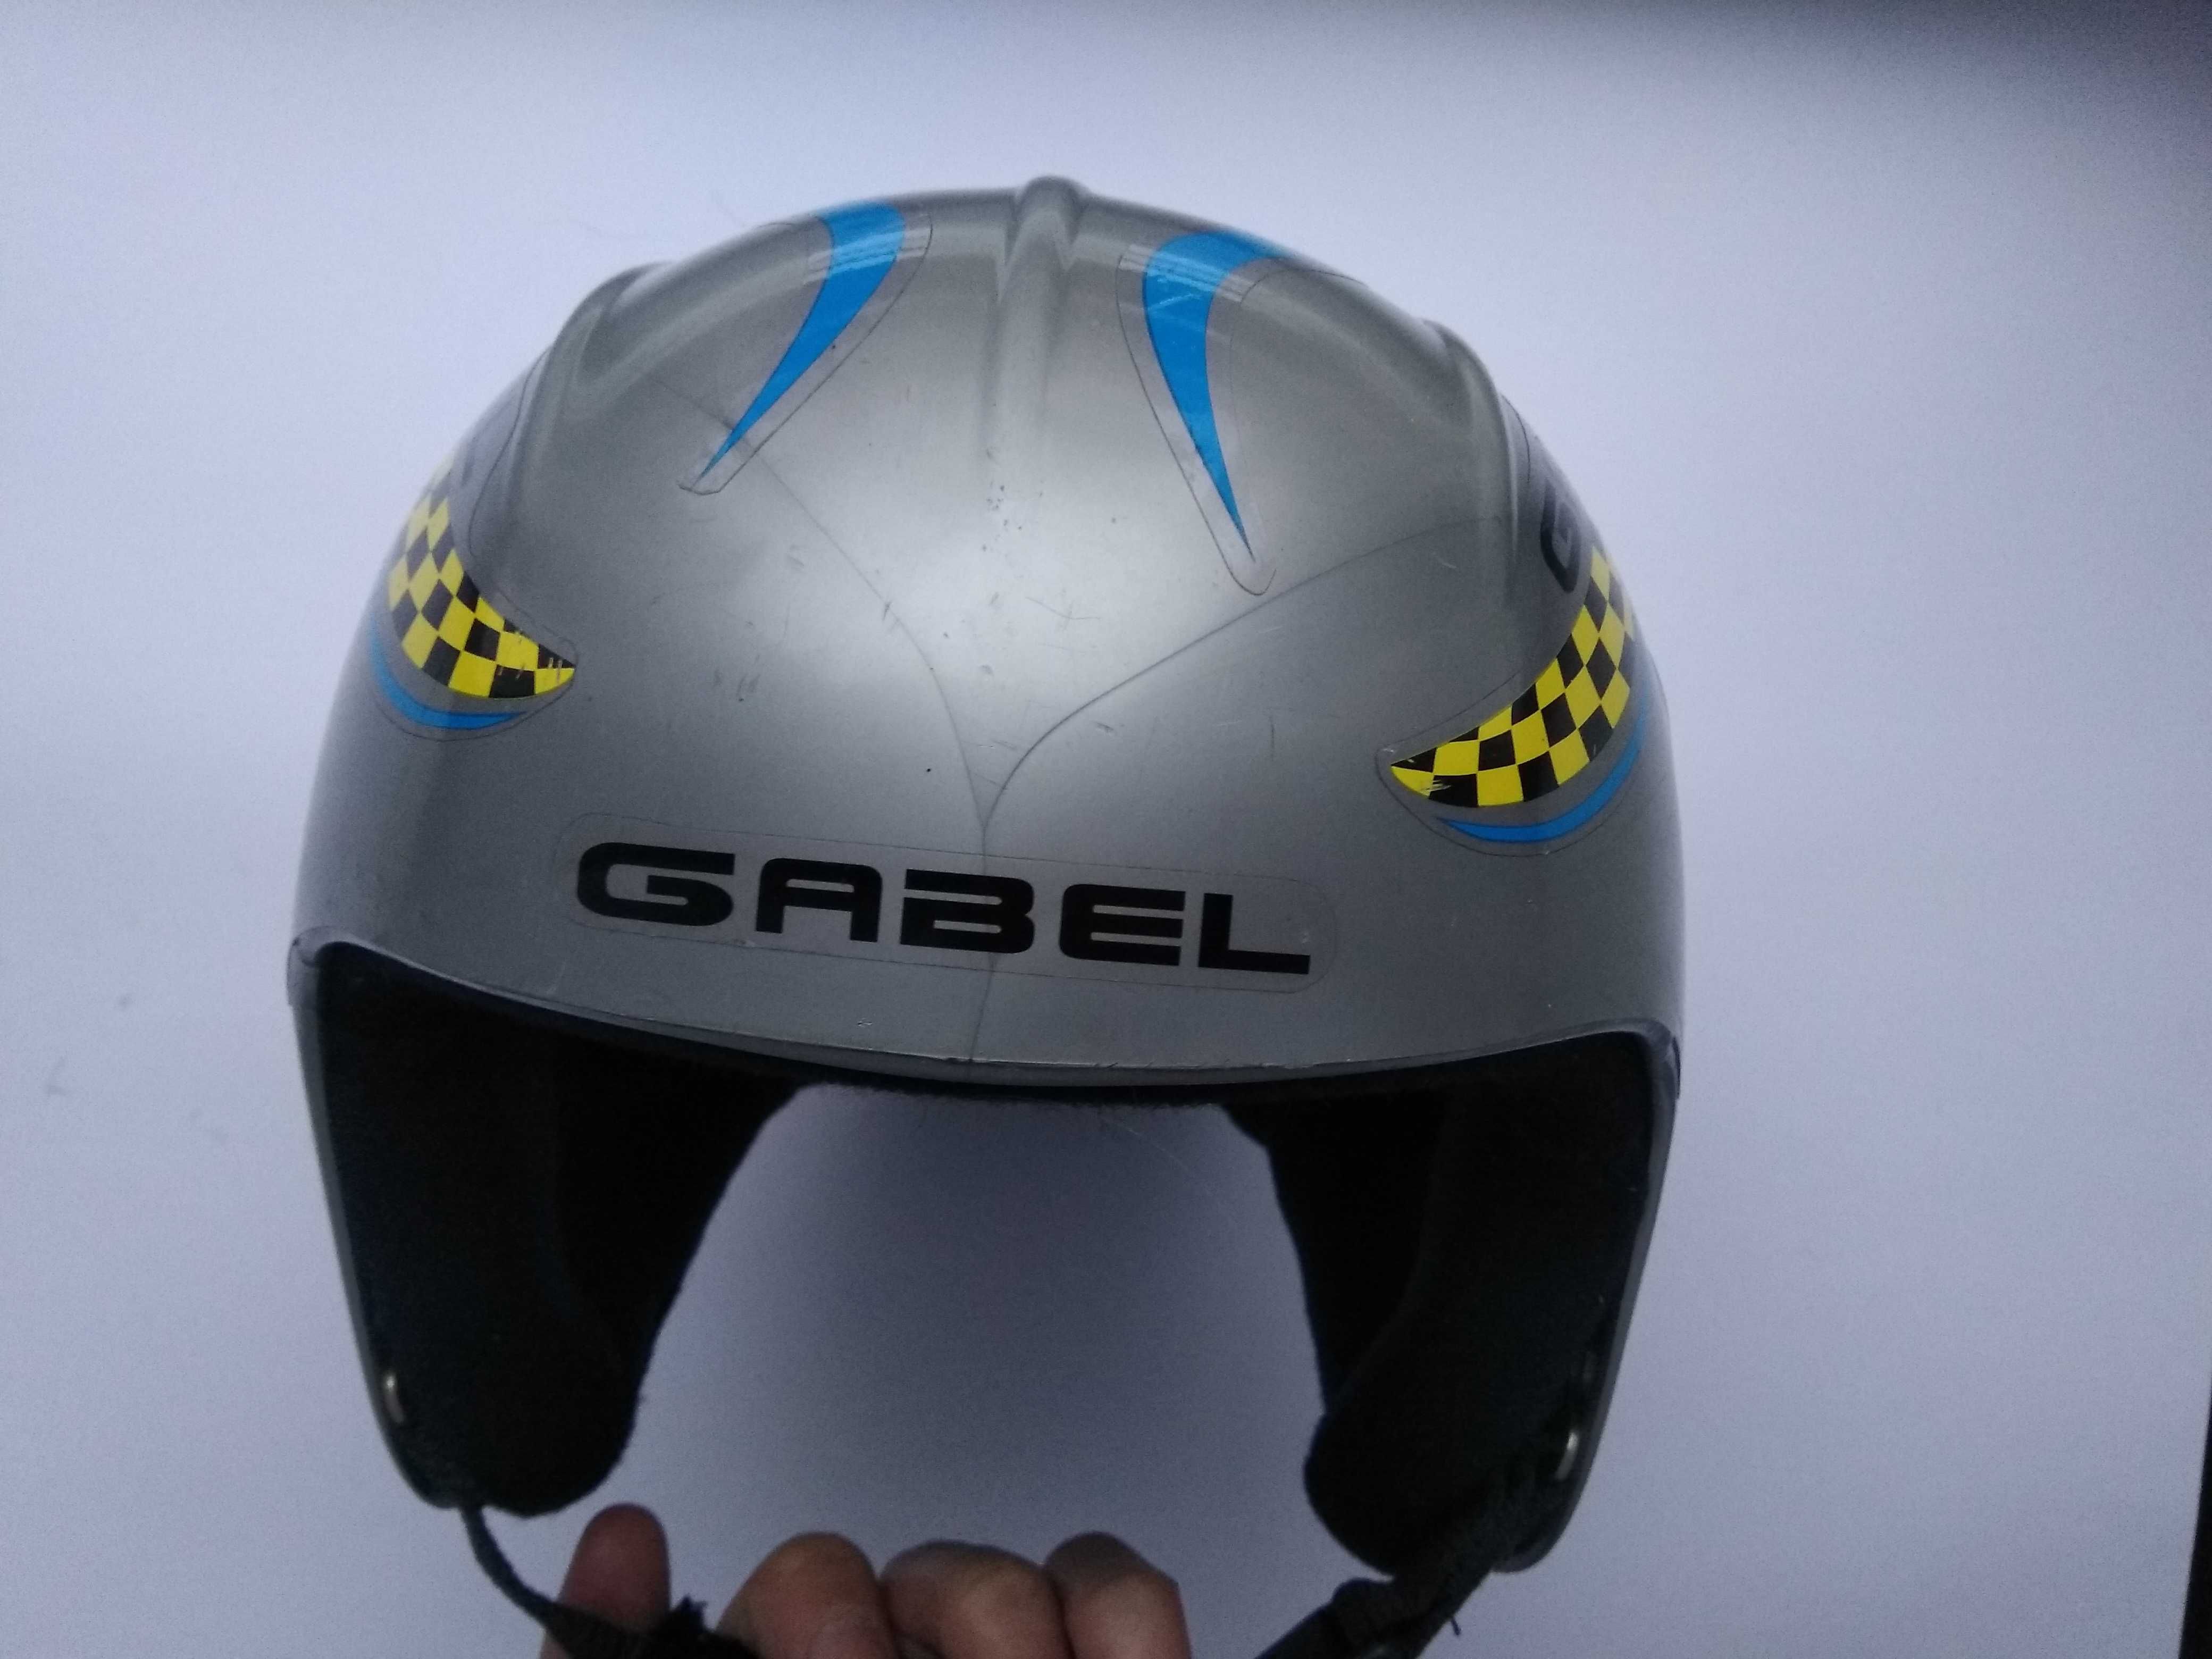 Горнолыжный шлем Gabel, размер 52-54см, сноубордический, зимний